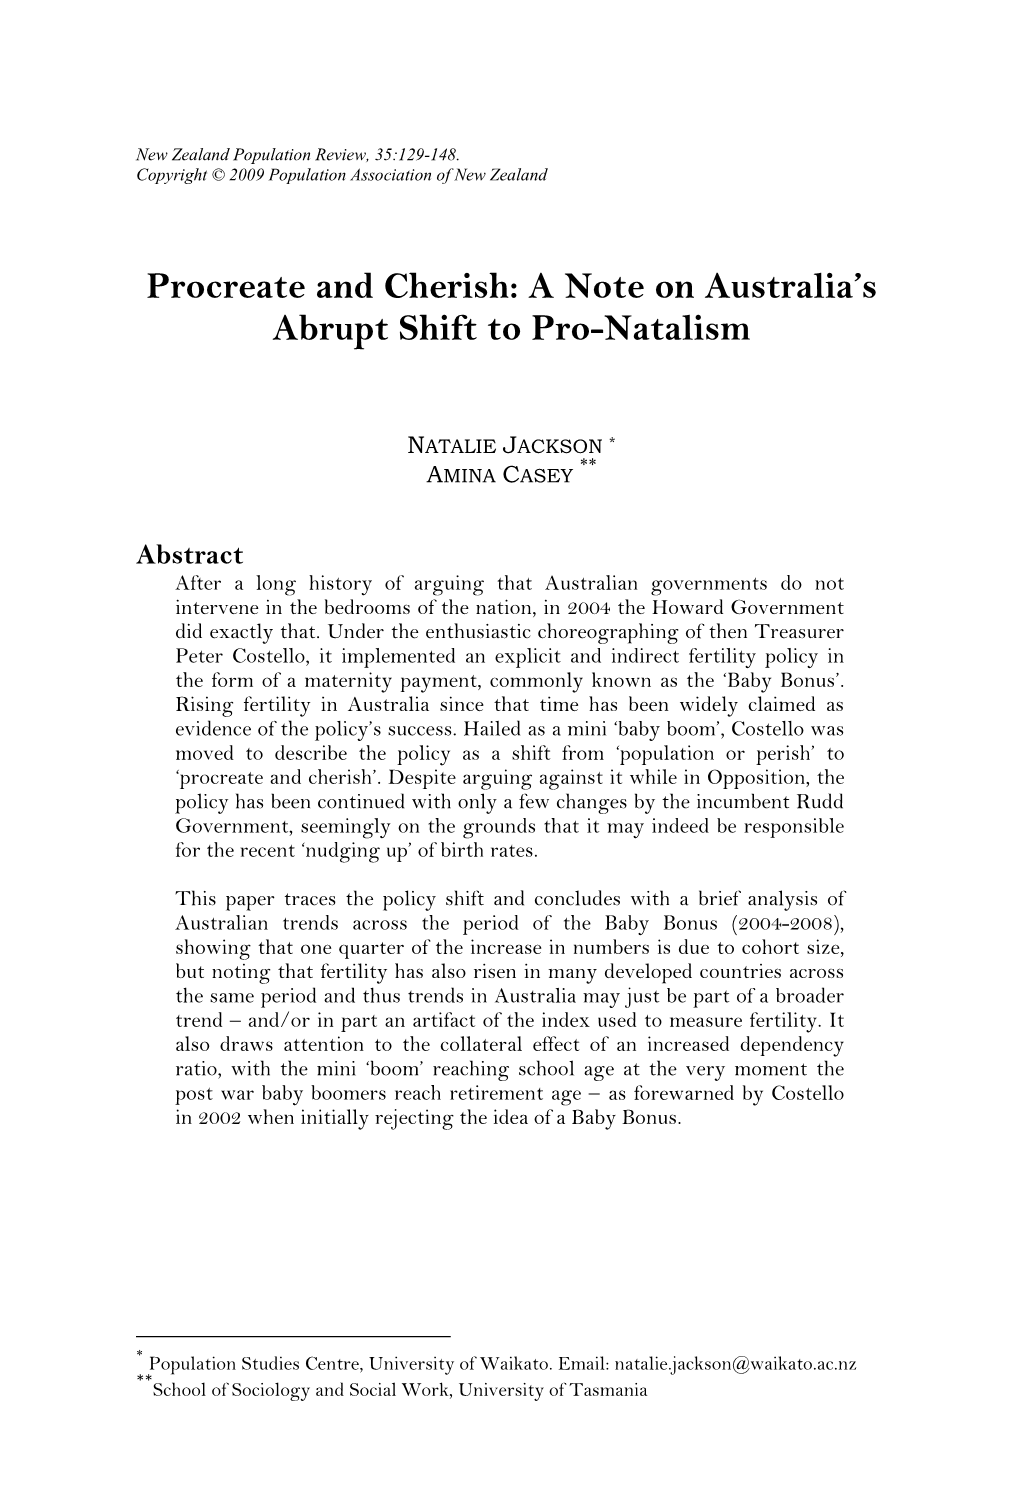 Procreate and Cherish: a Note on Australia's Abrupt Shift to Pro